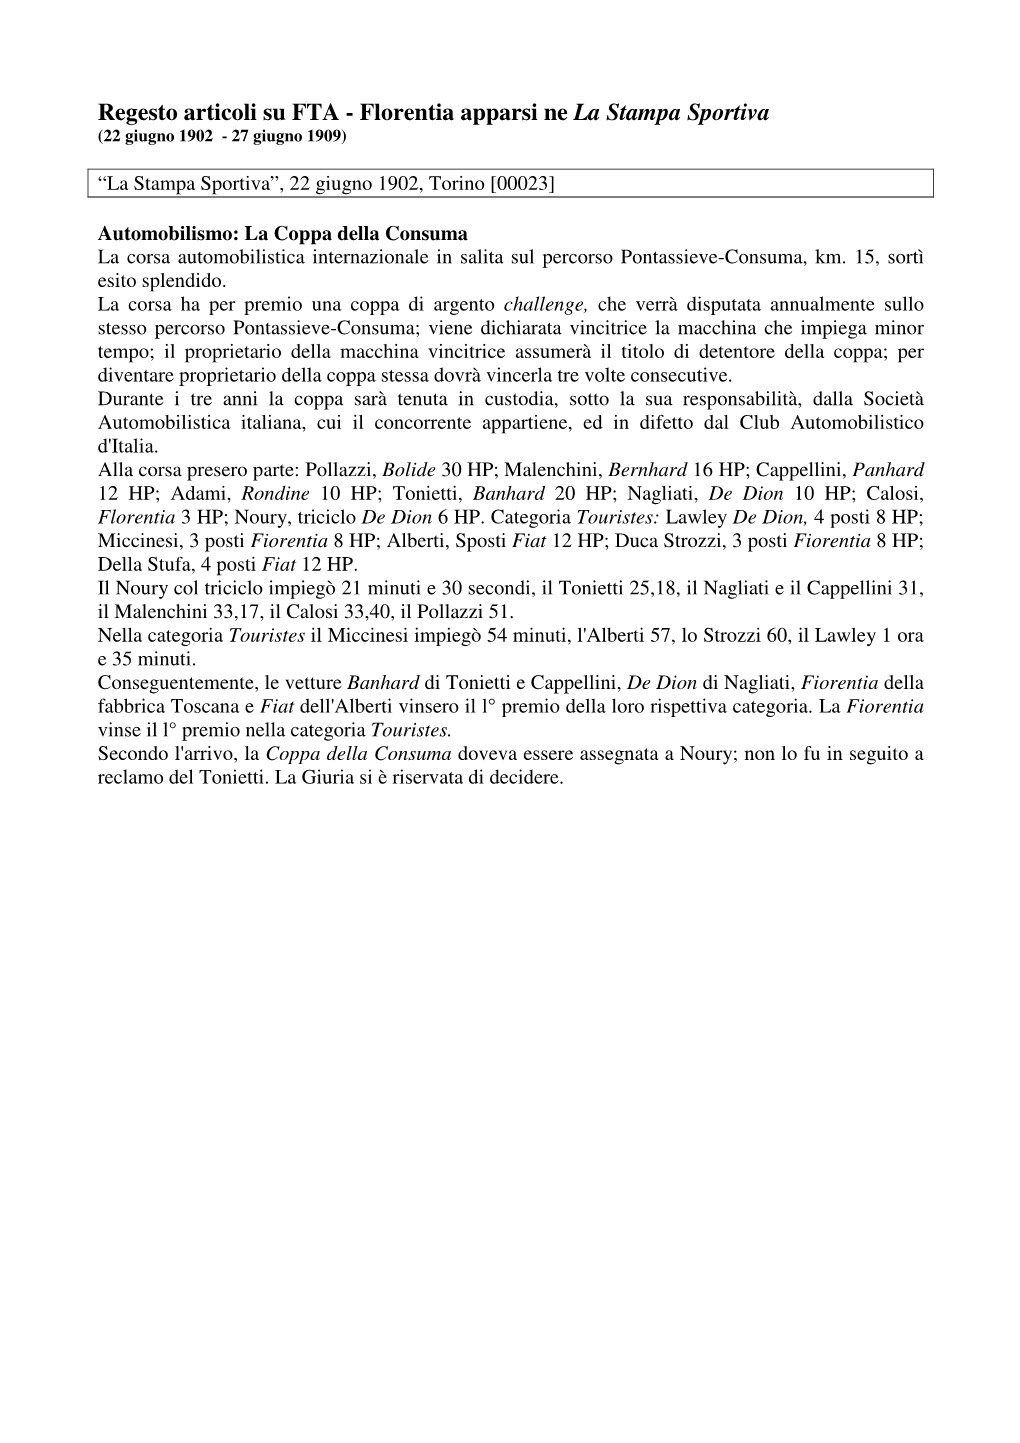 Regesto Articoli Su FTA - Florentia Apparsi Ne La Stampa Sportiva (22 Giugno 1902 - 27 Giugno 1909)